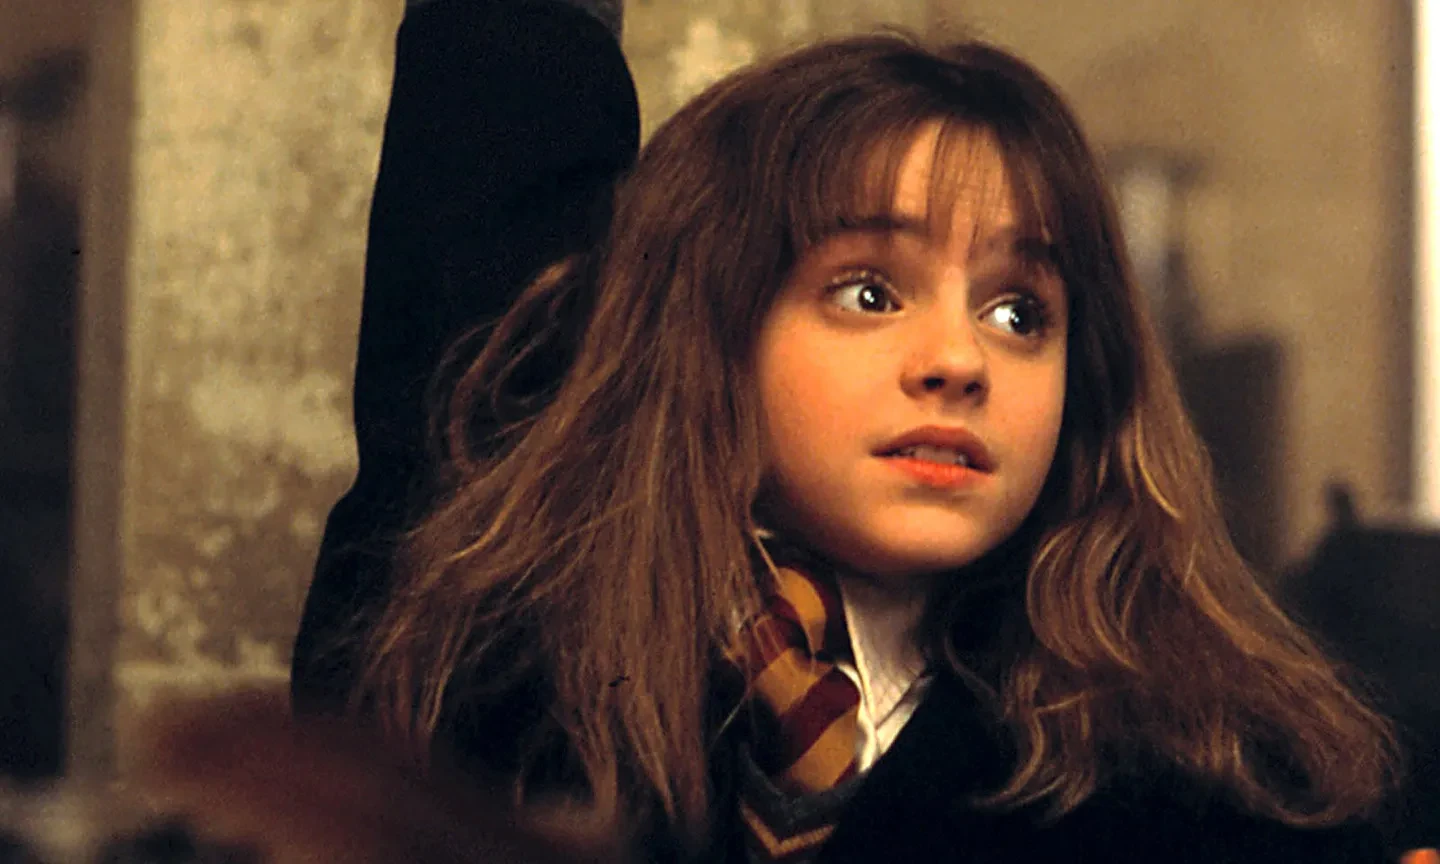 Emma Watson as Hermione Granger